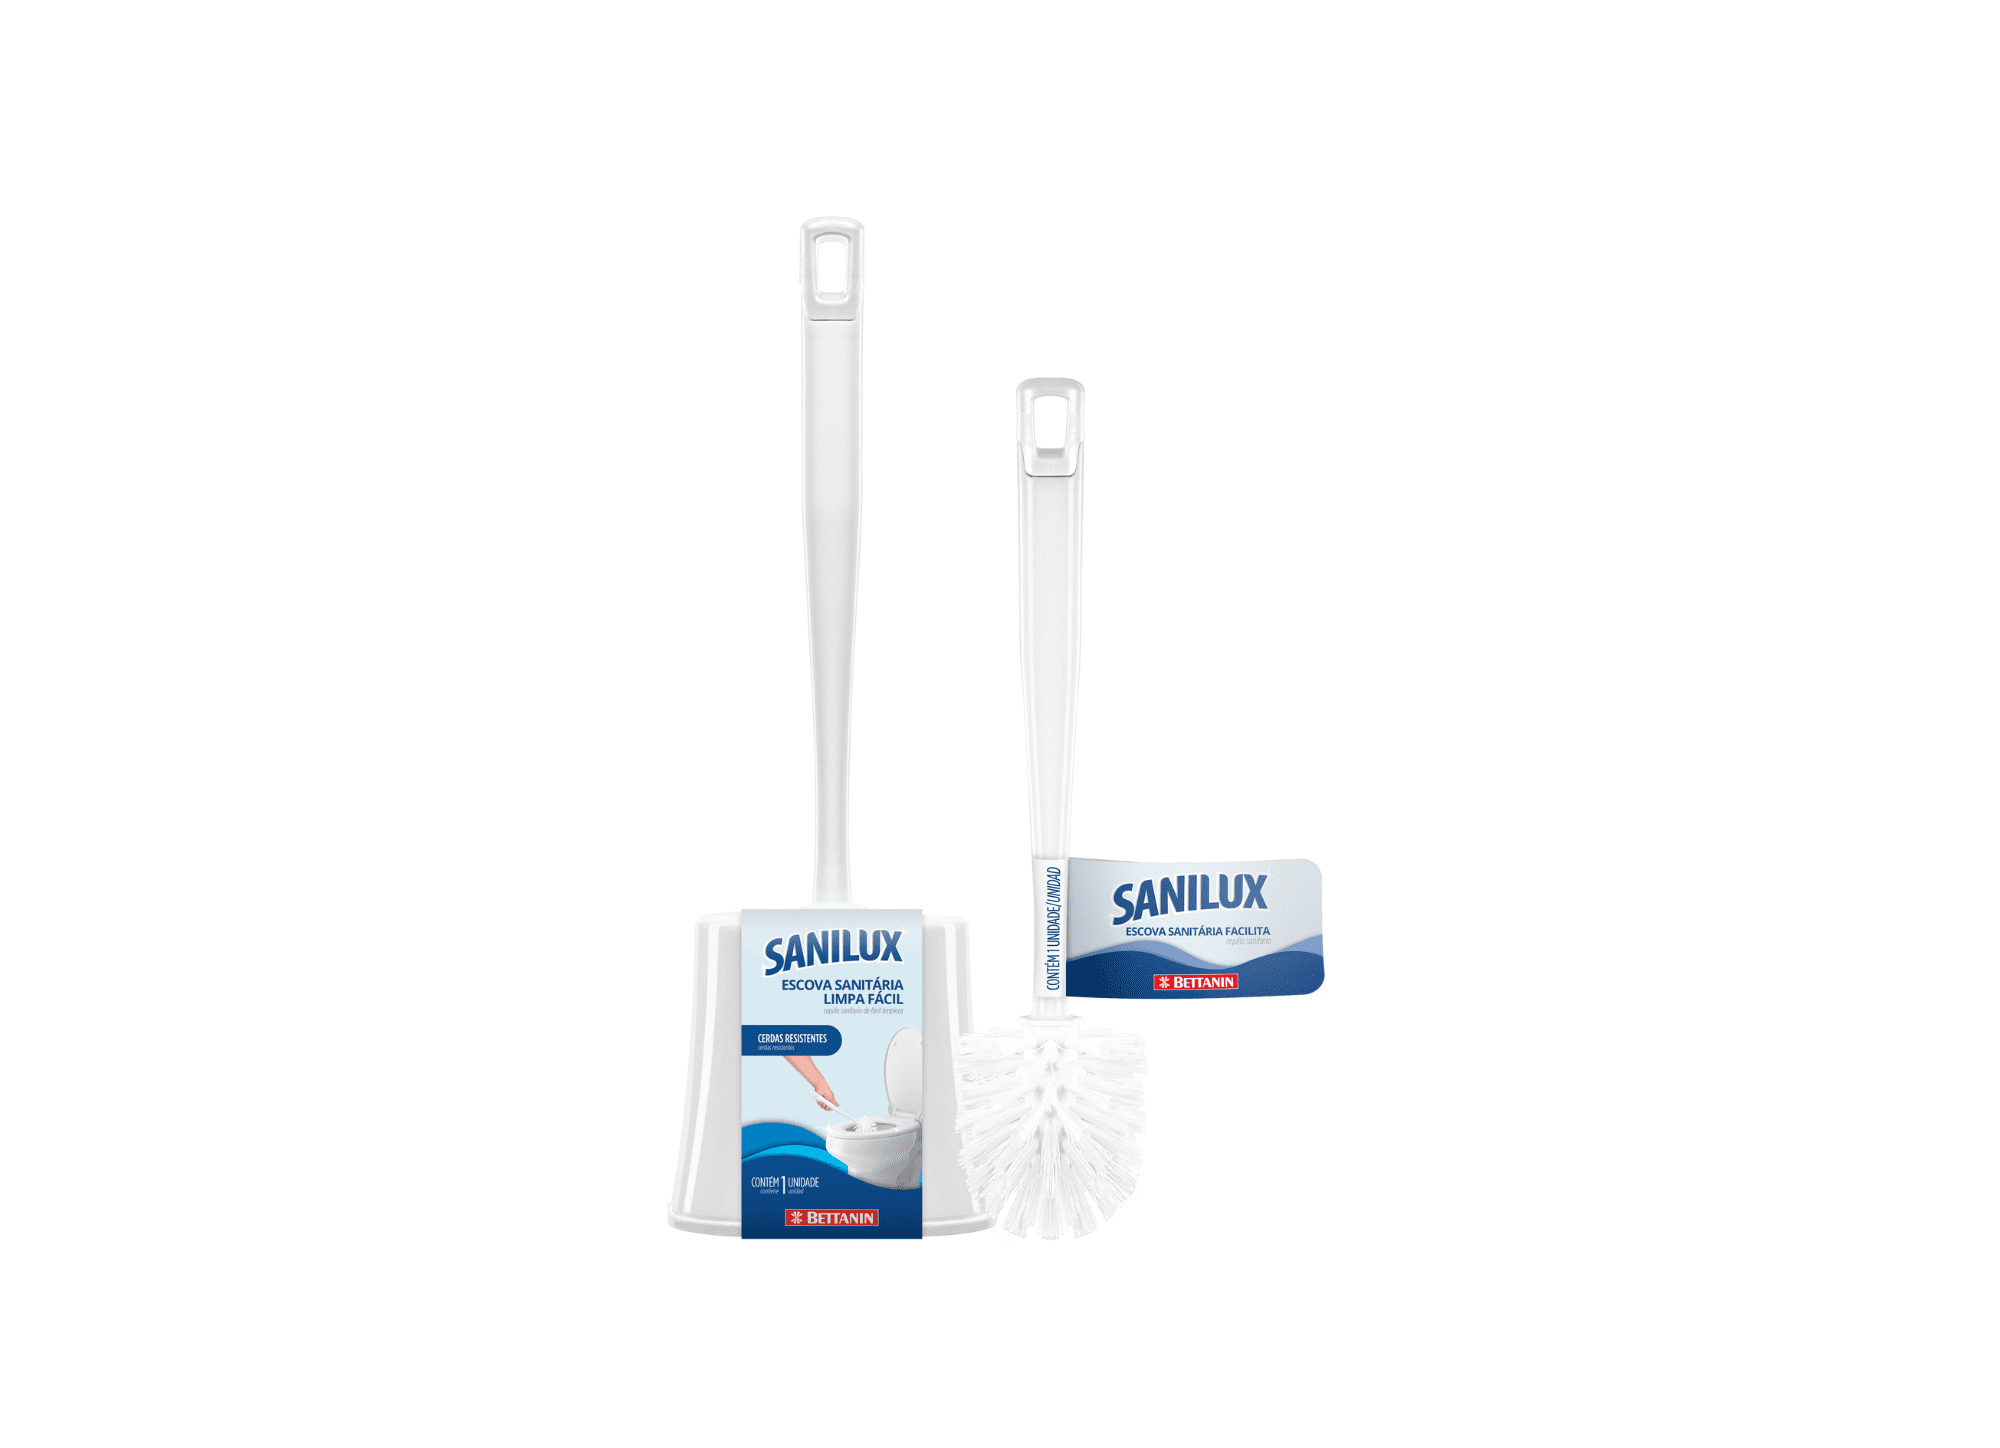 Featured image for “Sanilux amplia portfólio com escova sanitária limpa fácil e escova sanitária Facilita”